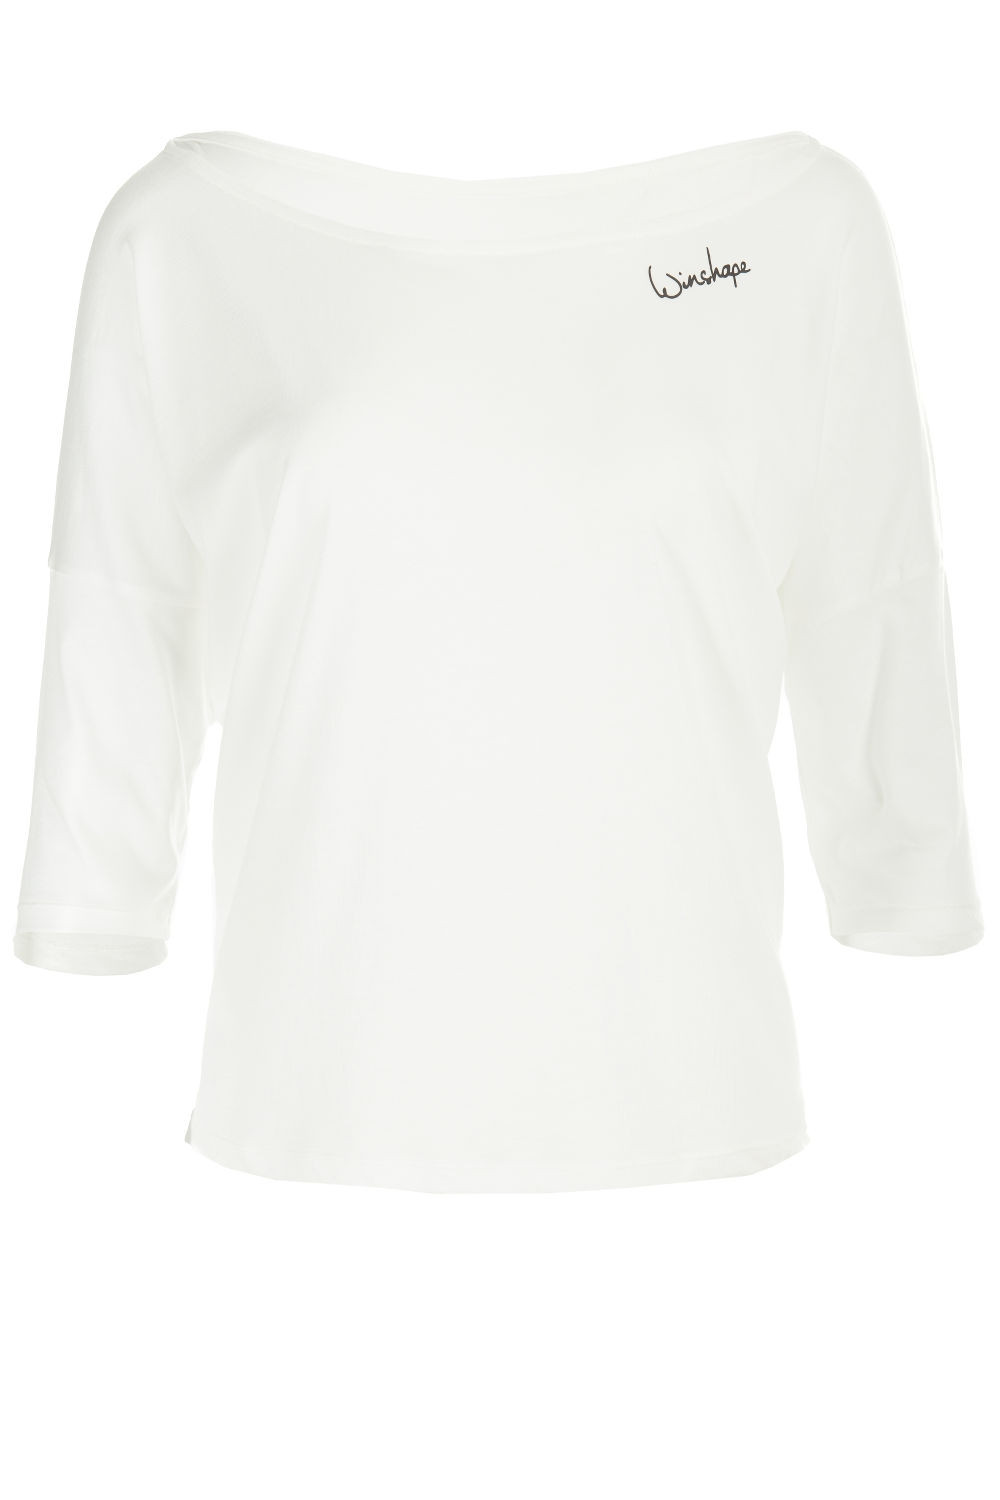 Ultra leichtes Modal-3/4-Arm Shirt MCS001, vanilla weiß, Winshape Dance  Style